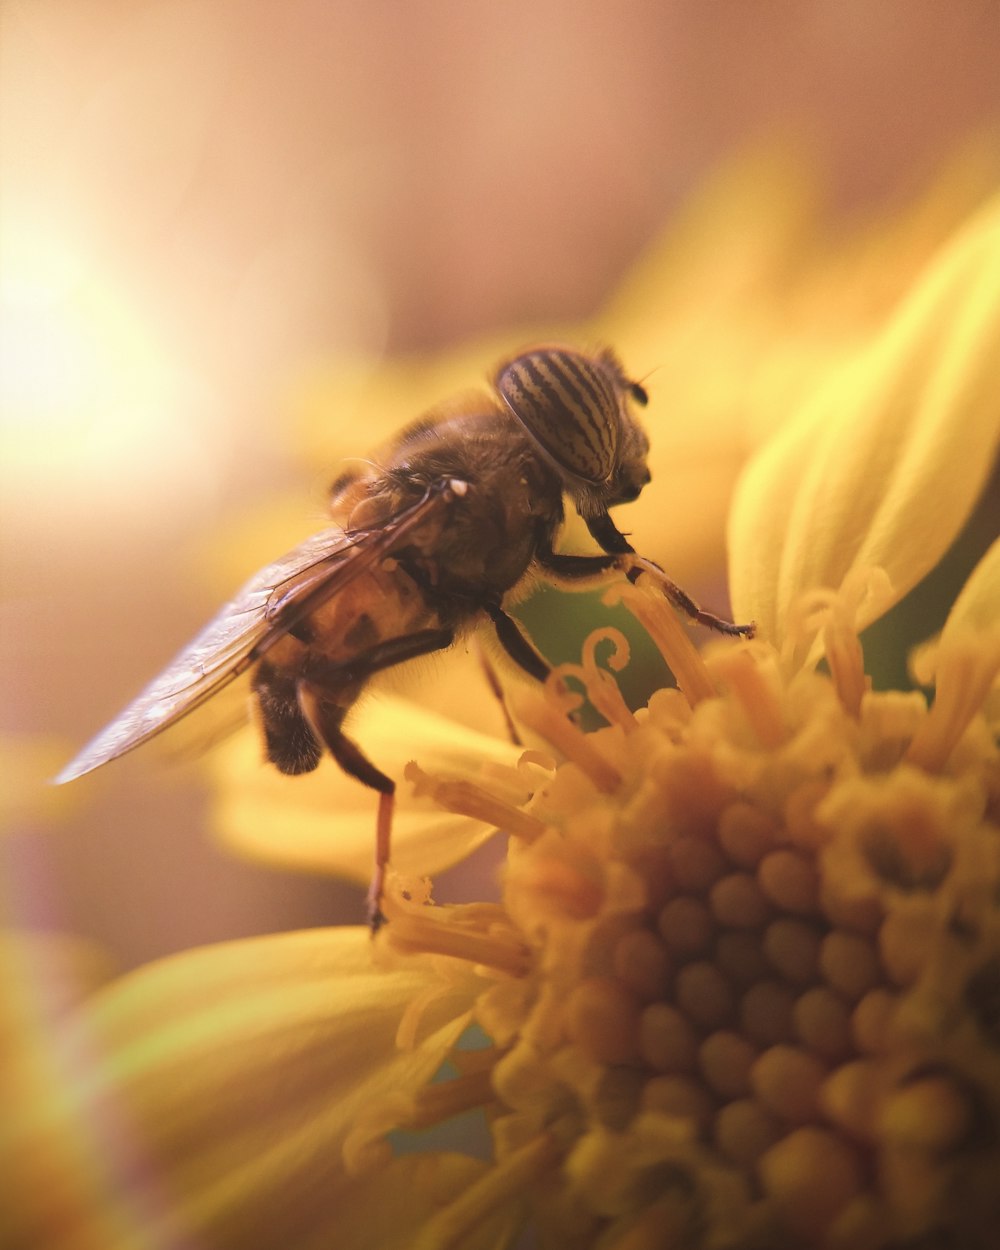 une abeille assise au sommet d’une fleur jaune